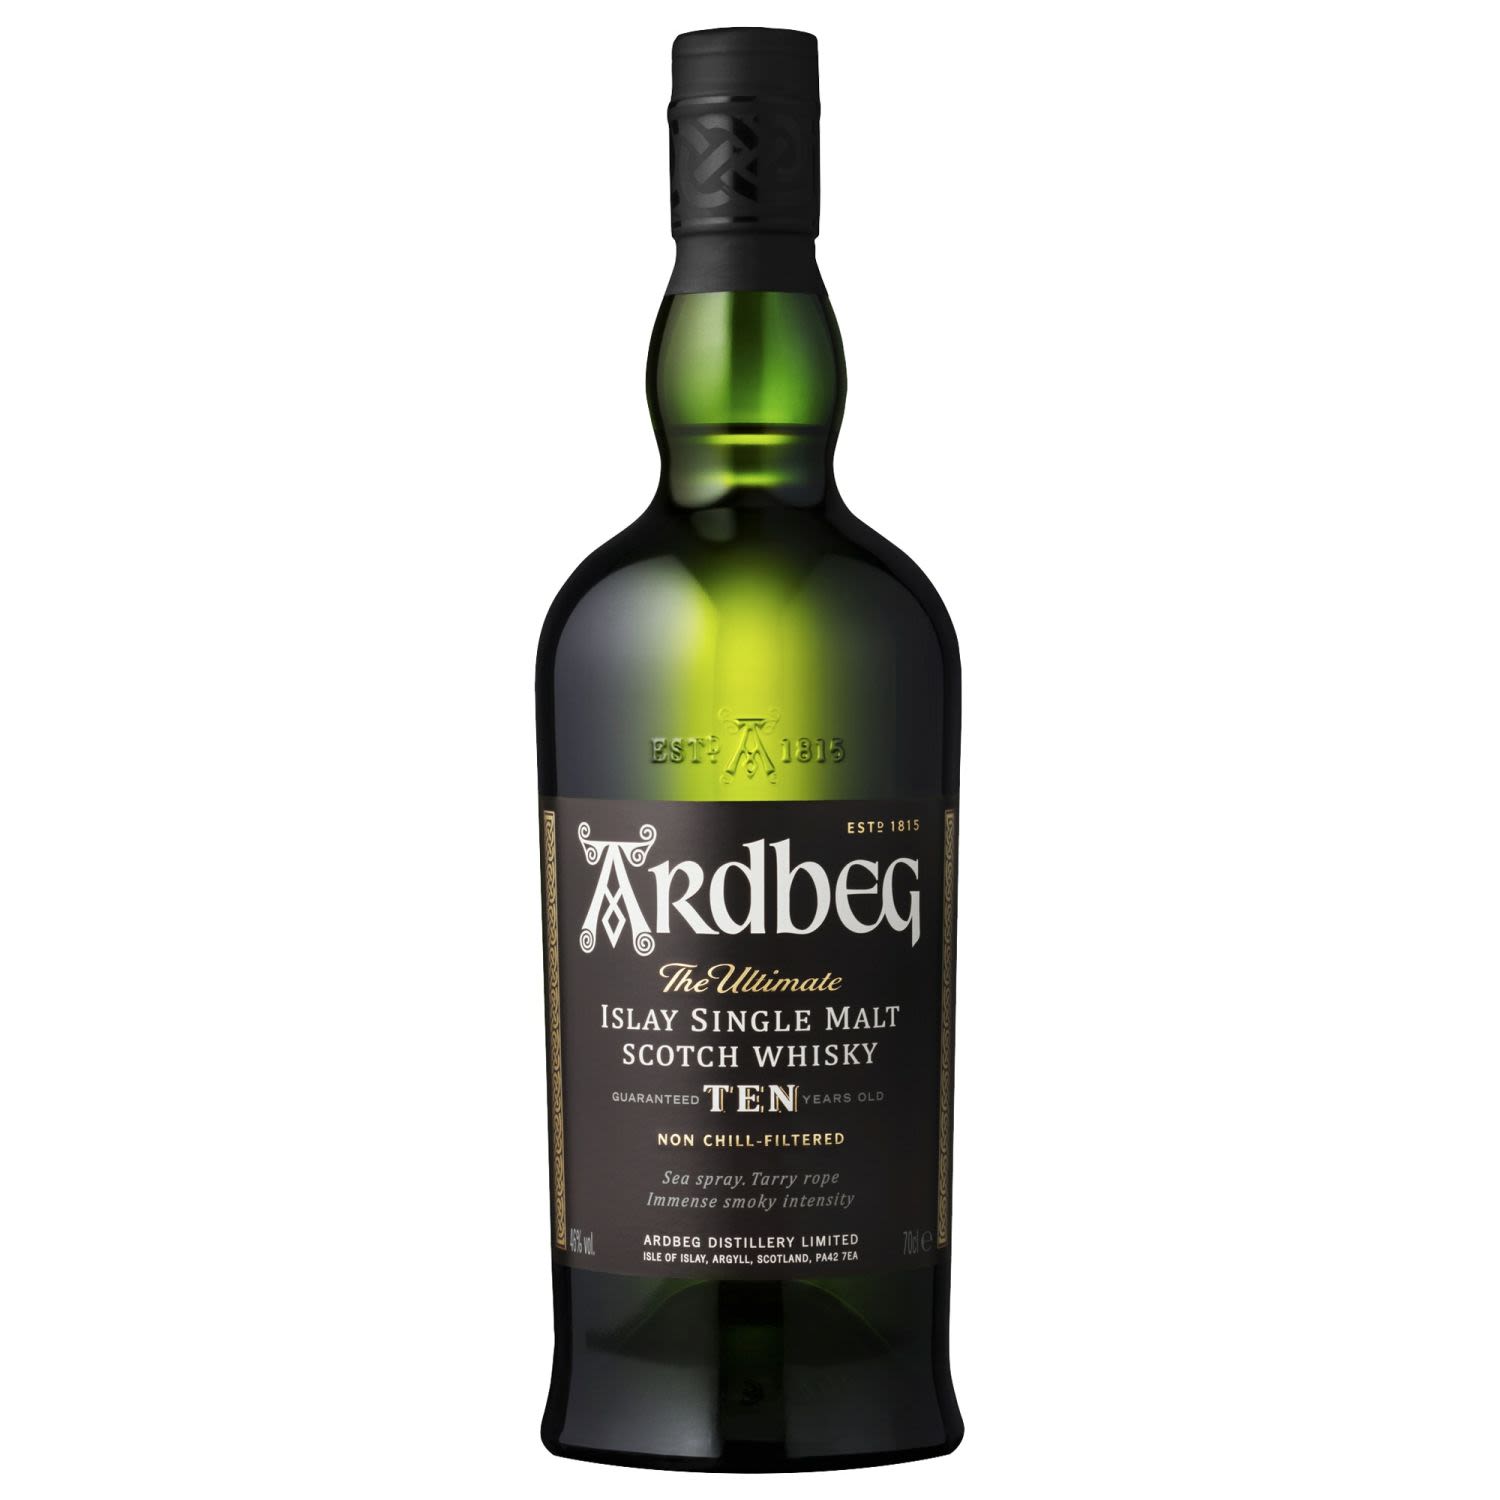 Ardbeg 10 Year Old Scotch Whisky 700mL Bottle